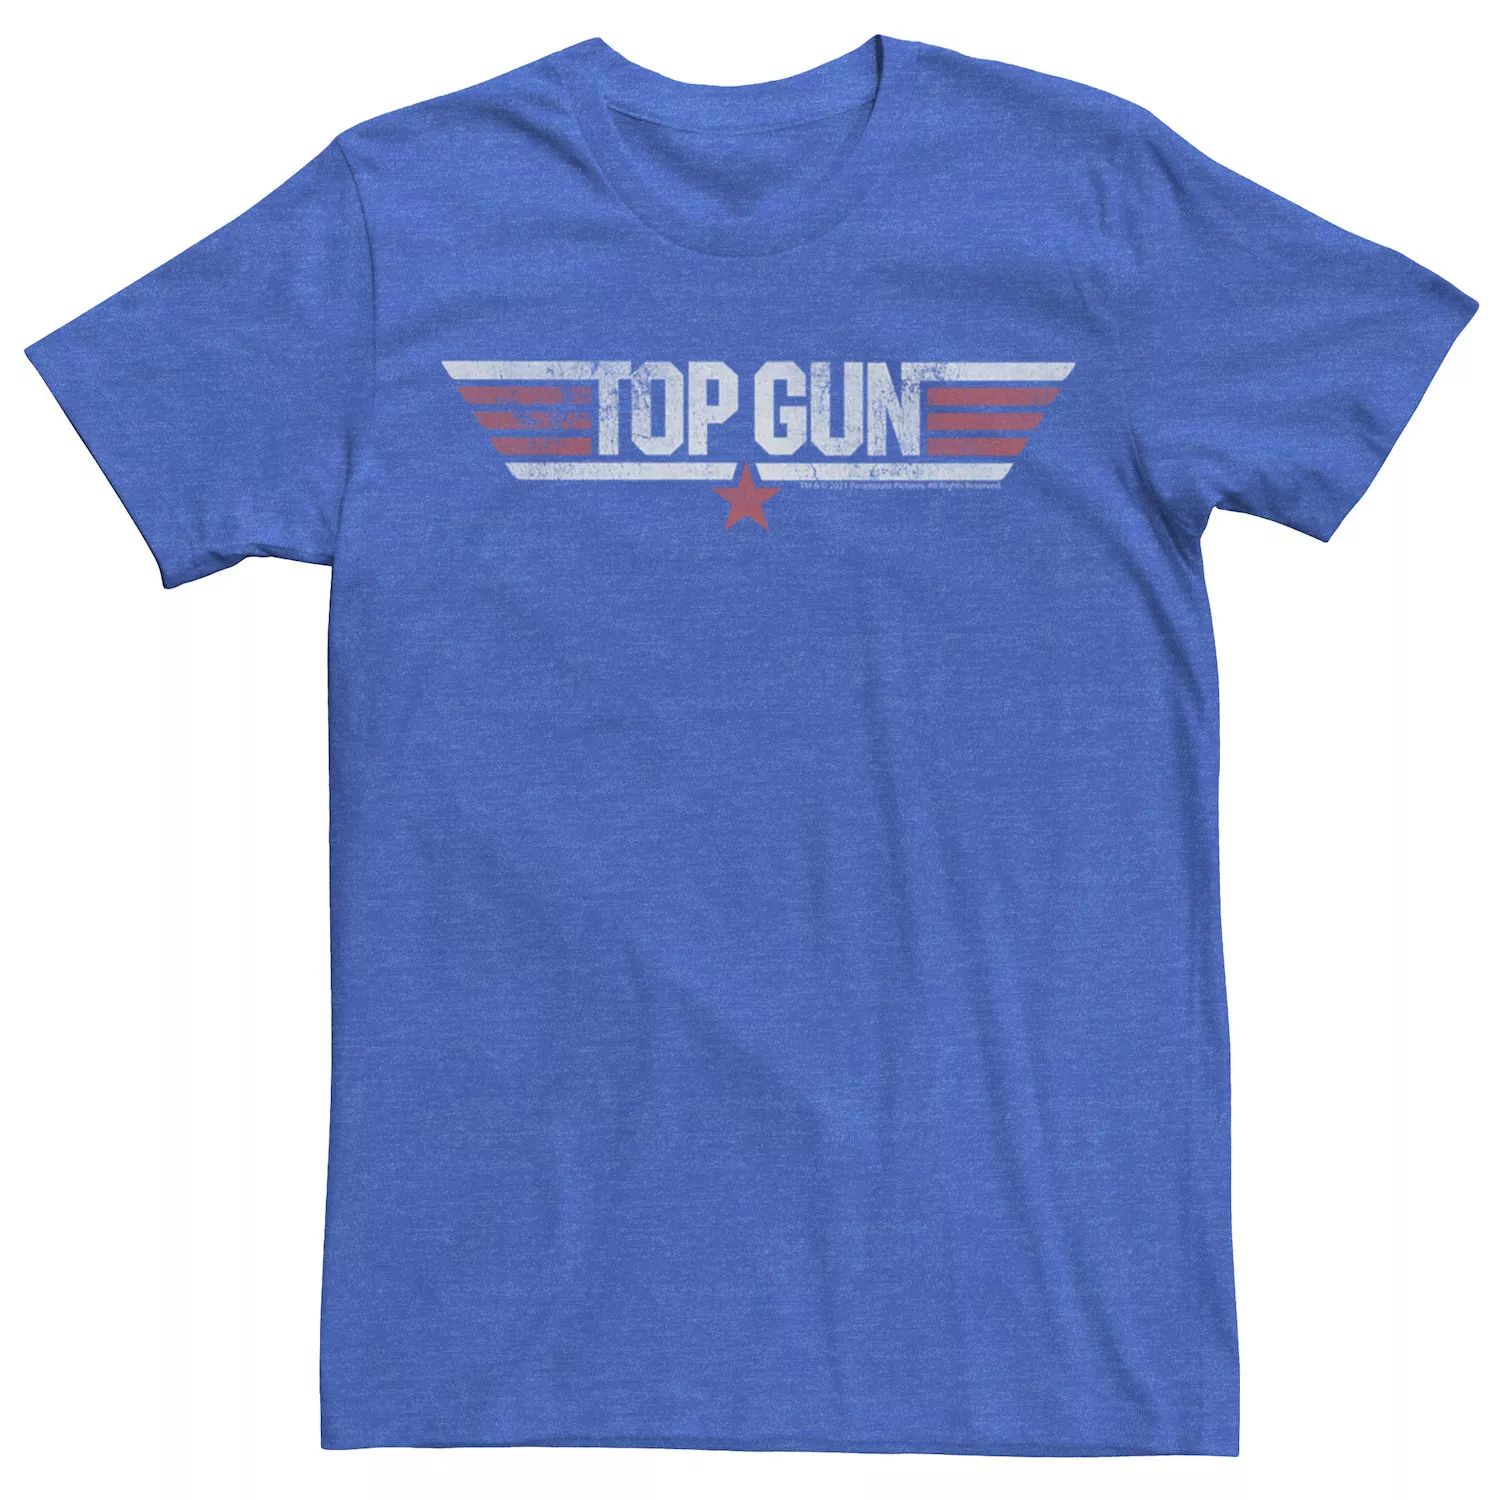 Мужская футболка с логотипом Top Gun Classic Licensed Character